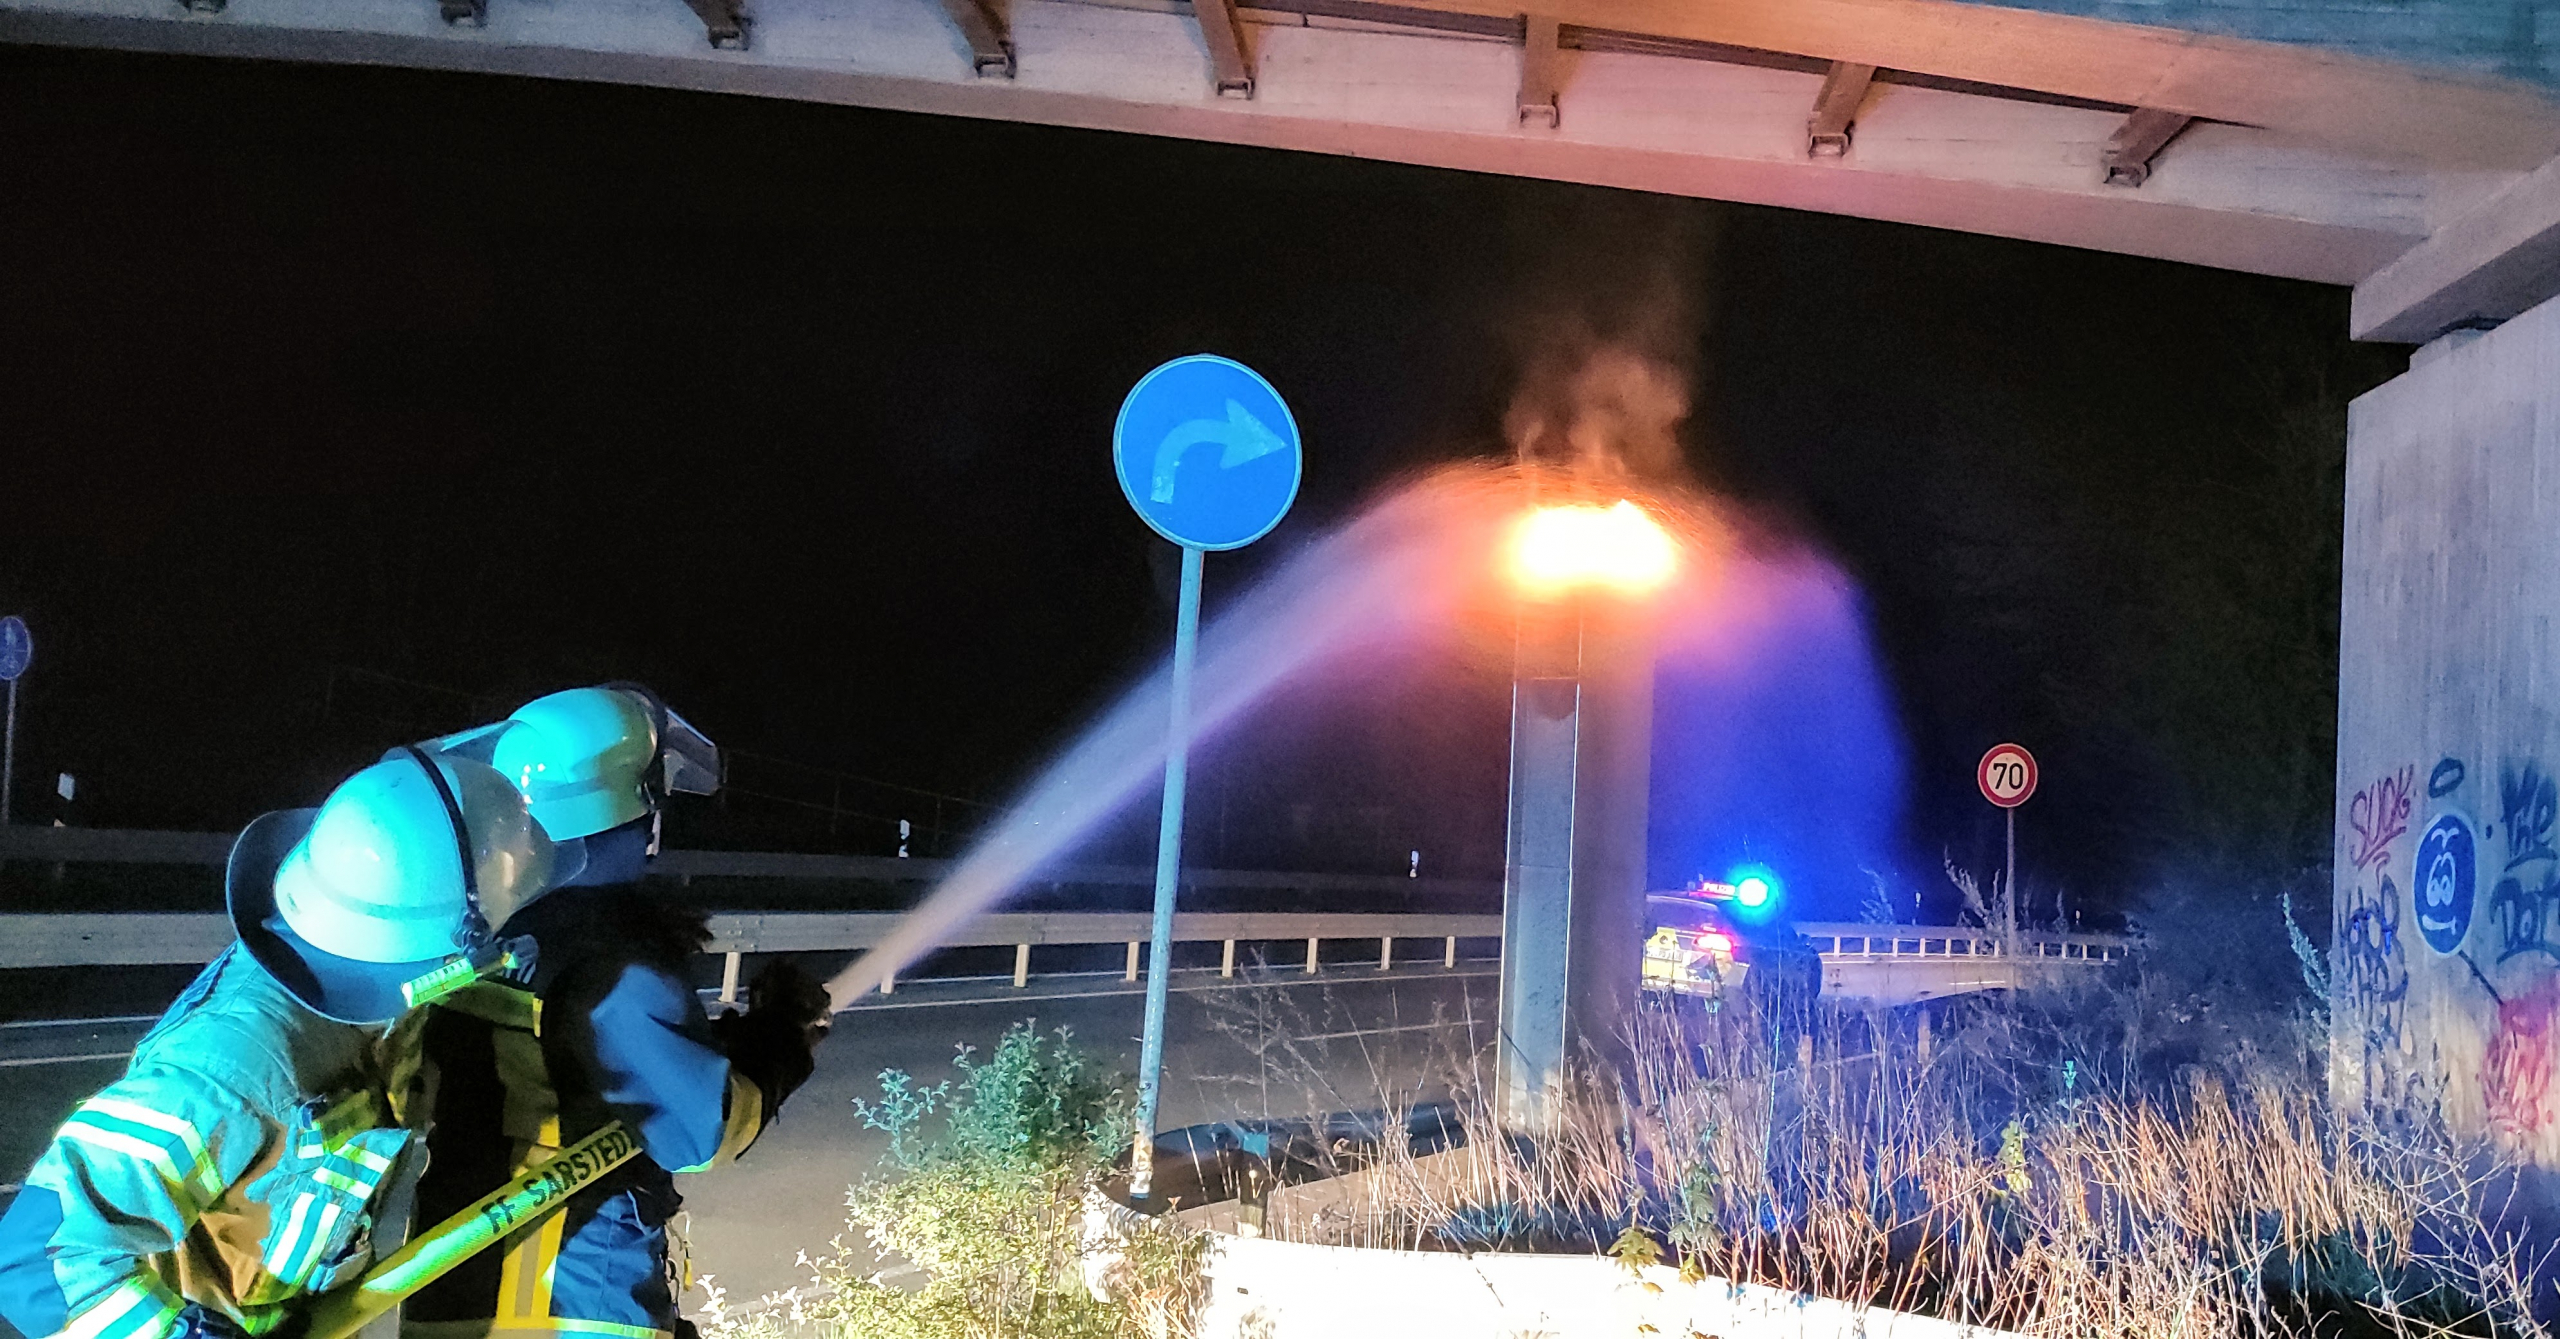 Feuerwehrleute löschen eine brennende Radarfalle